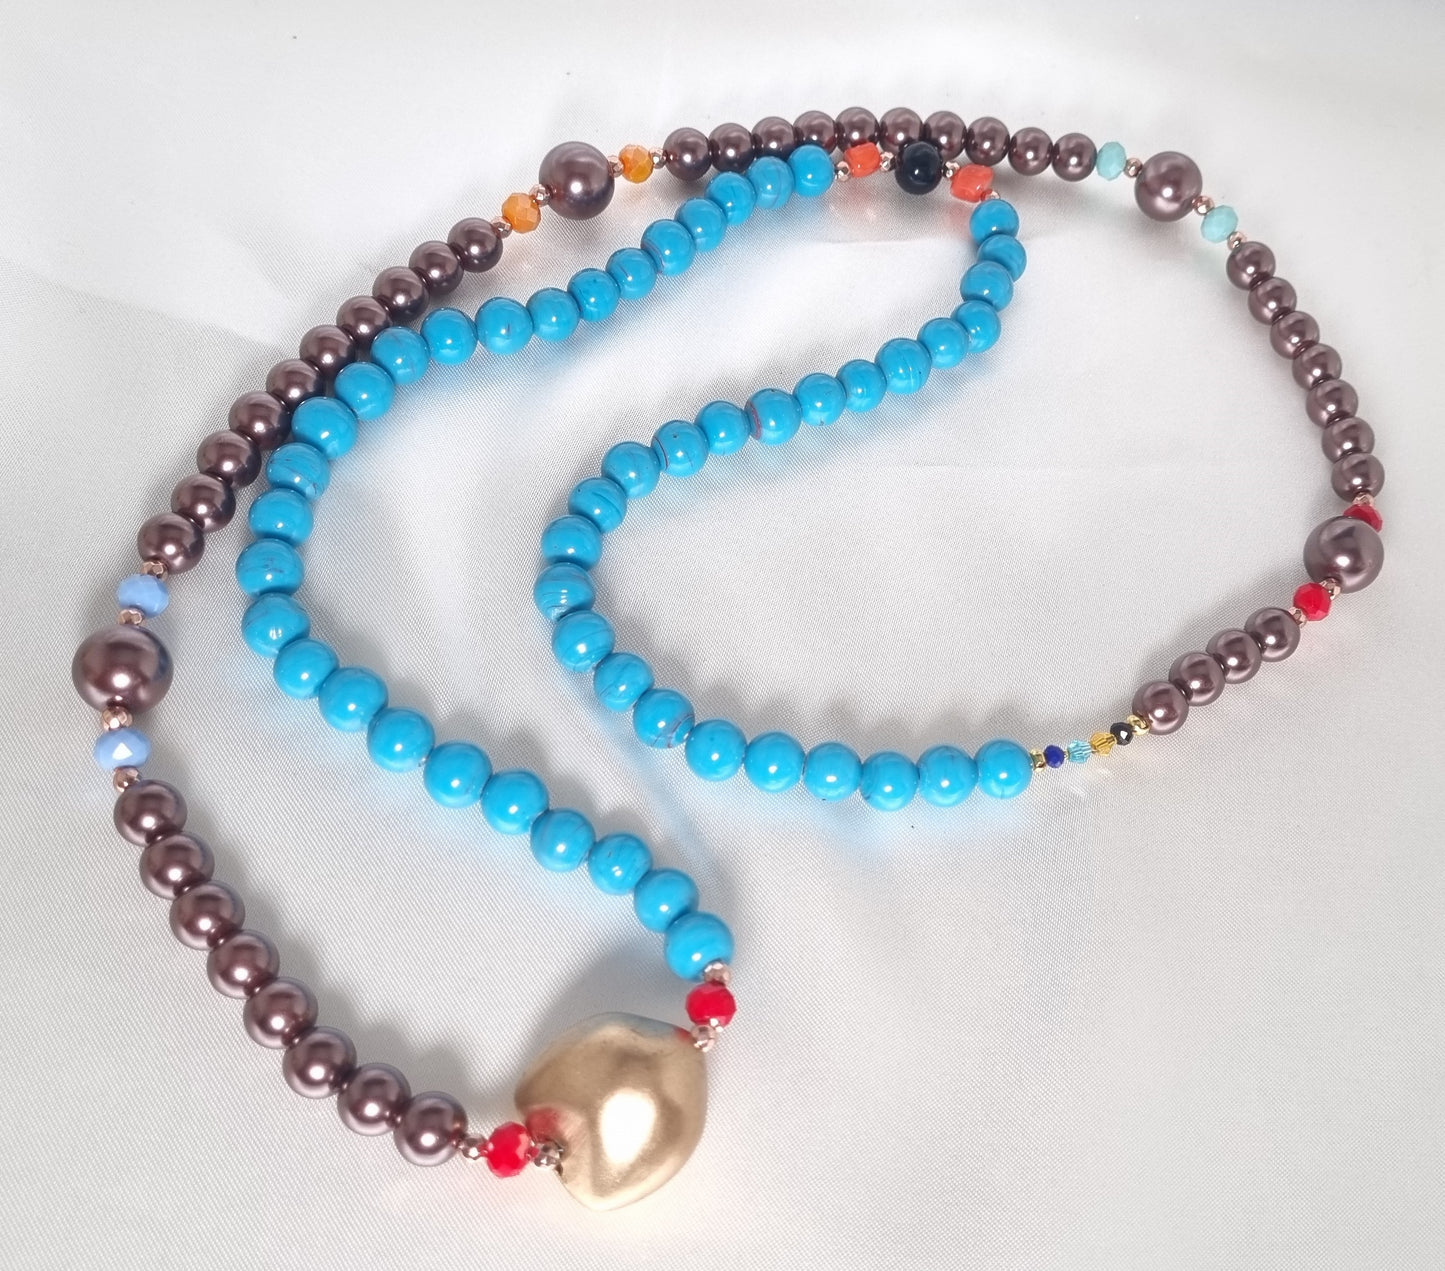 Collana LE PIETRE .078 lunga, mezzo filo perle bronzo, mezzo filo perle turchese, cristalli colorati.